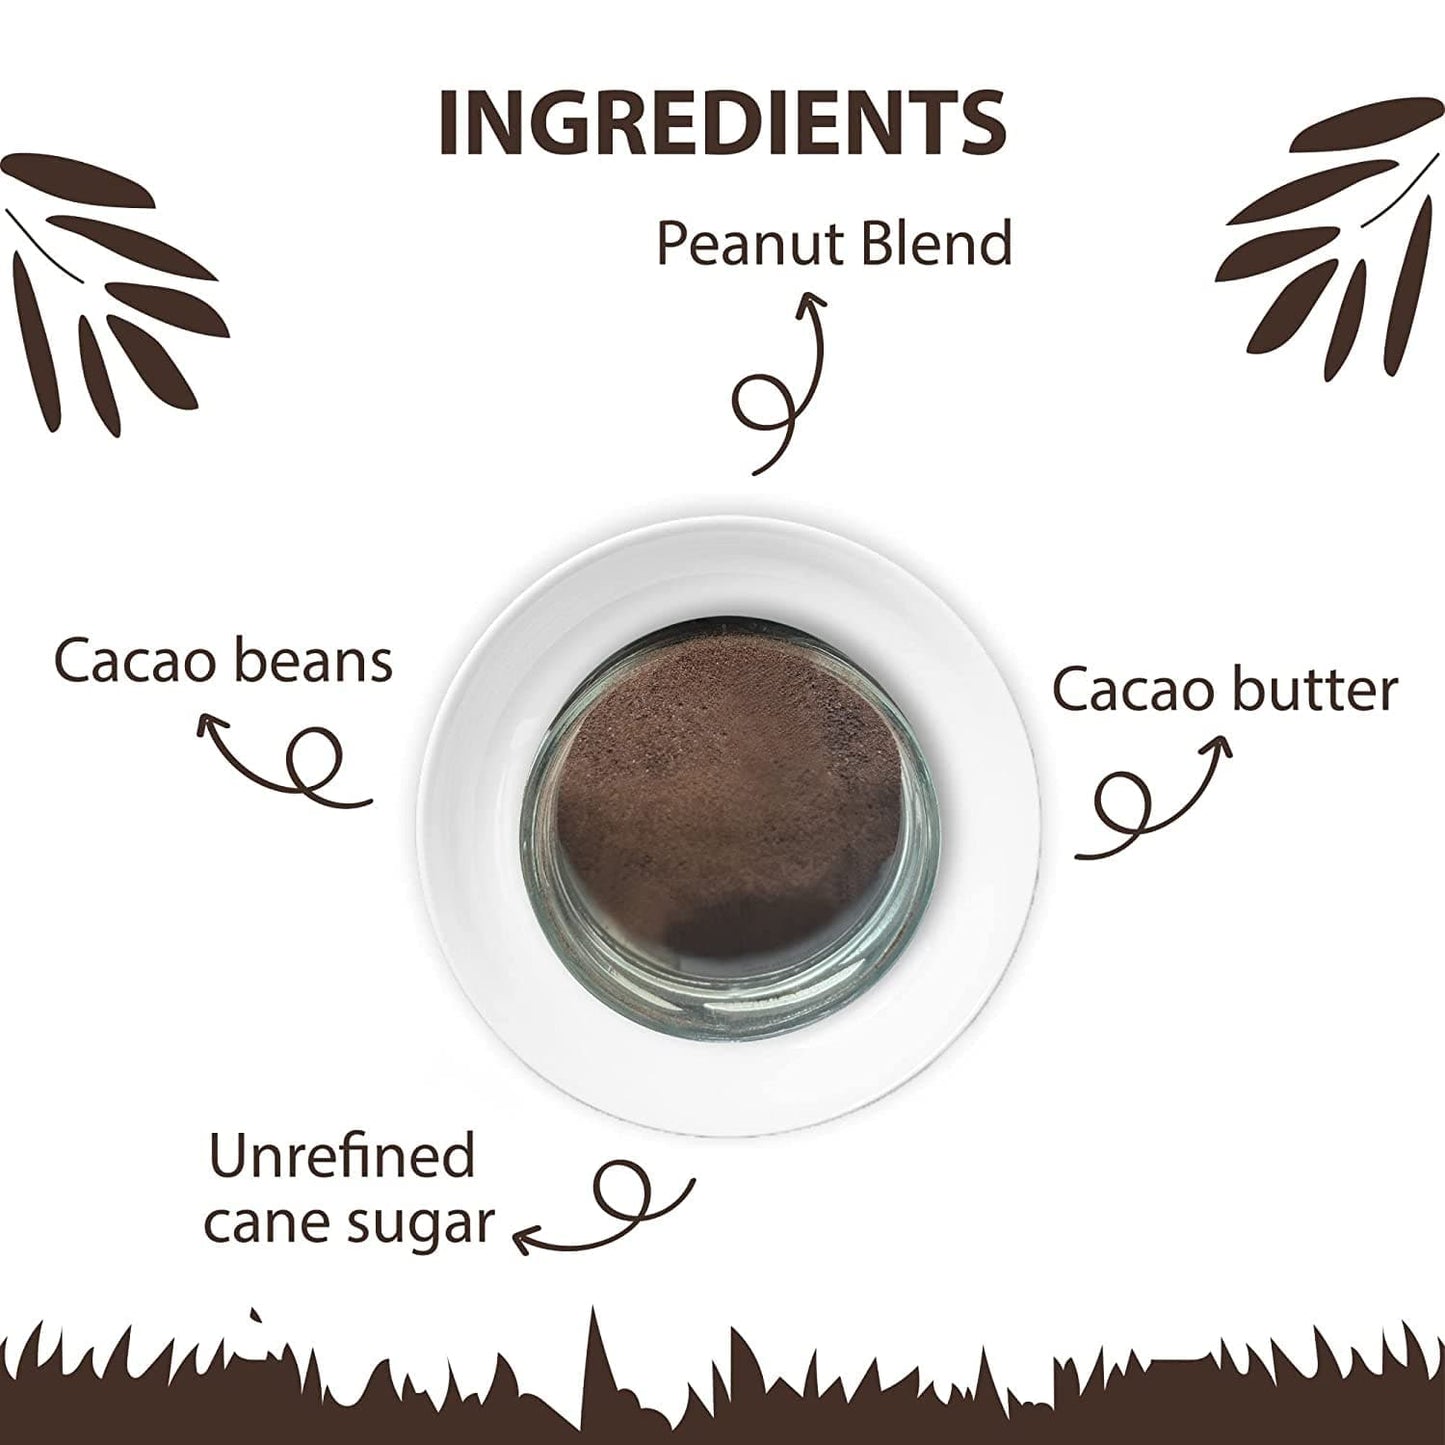 Darkins 57% Hot Chocolate Mix Classic Blend | Unrefined Cane Sugar |100g Each Pack of 2